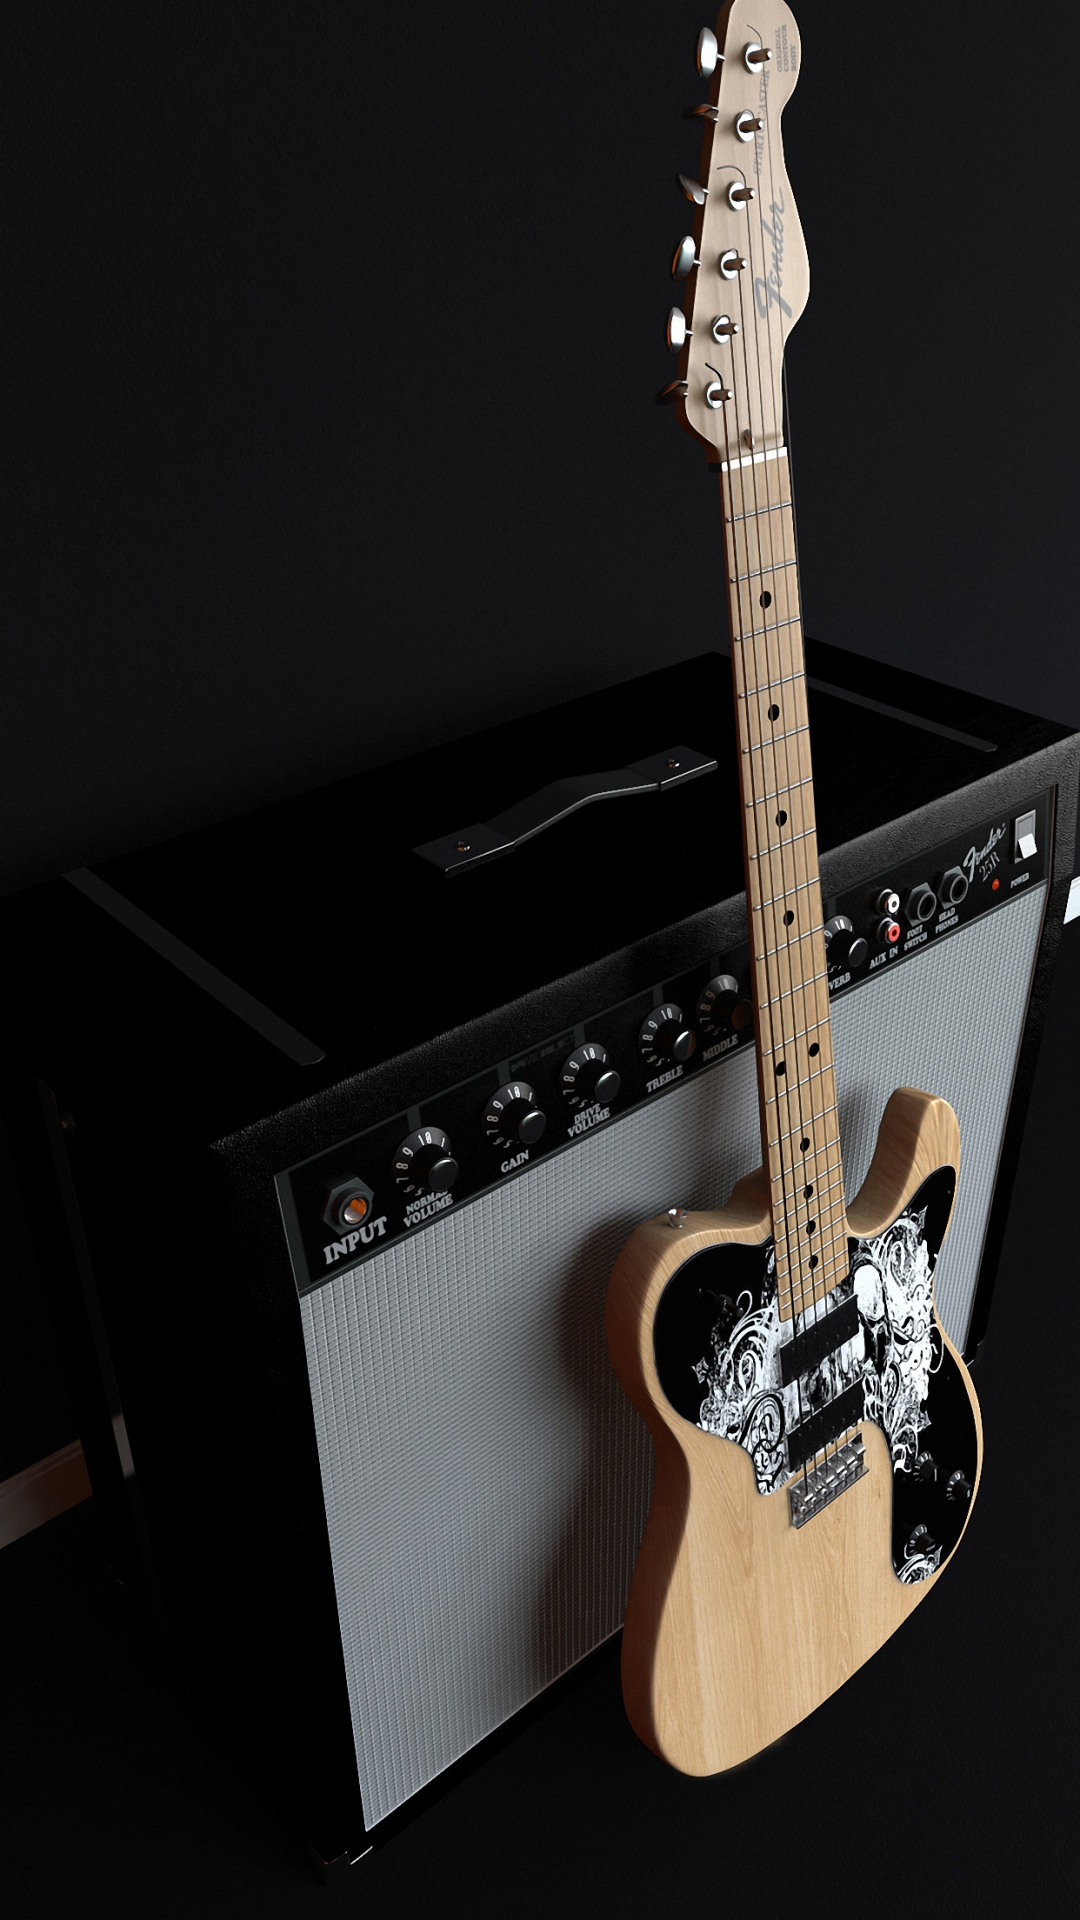 Fender Music Guitar iPhone 6s Plus Wallpaper HD